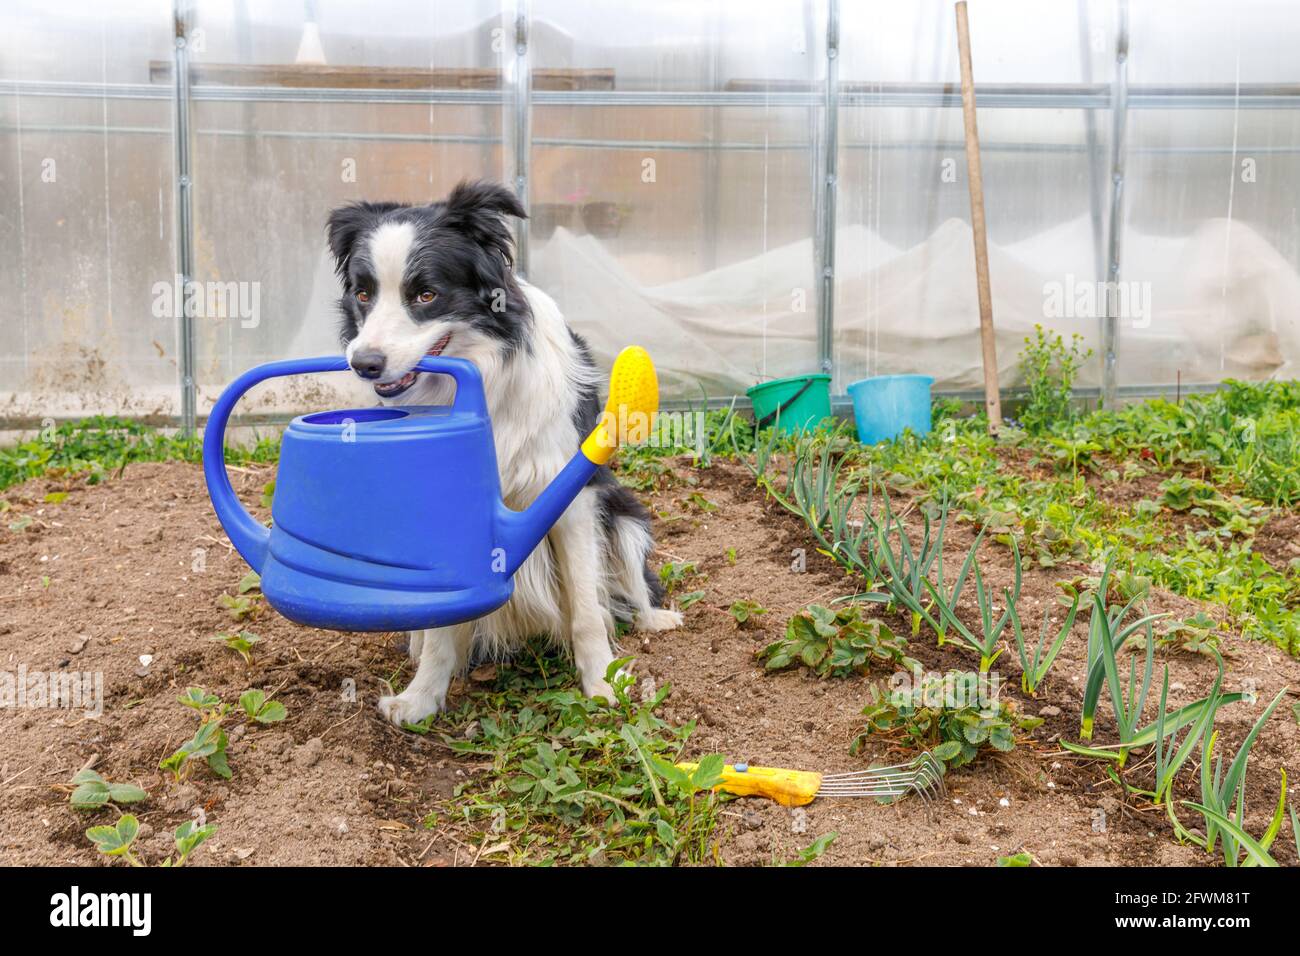 Im Freien Porträt von niedlichen lächelnden Hund Grenze Collie hält Gießkannen im Mund auf Garten Hintergrund. Lustige Welpen als Gärtner holen Gießkanne f Stockfoto